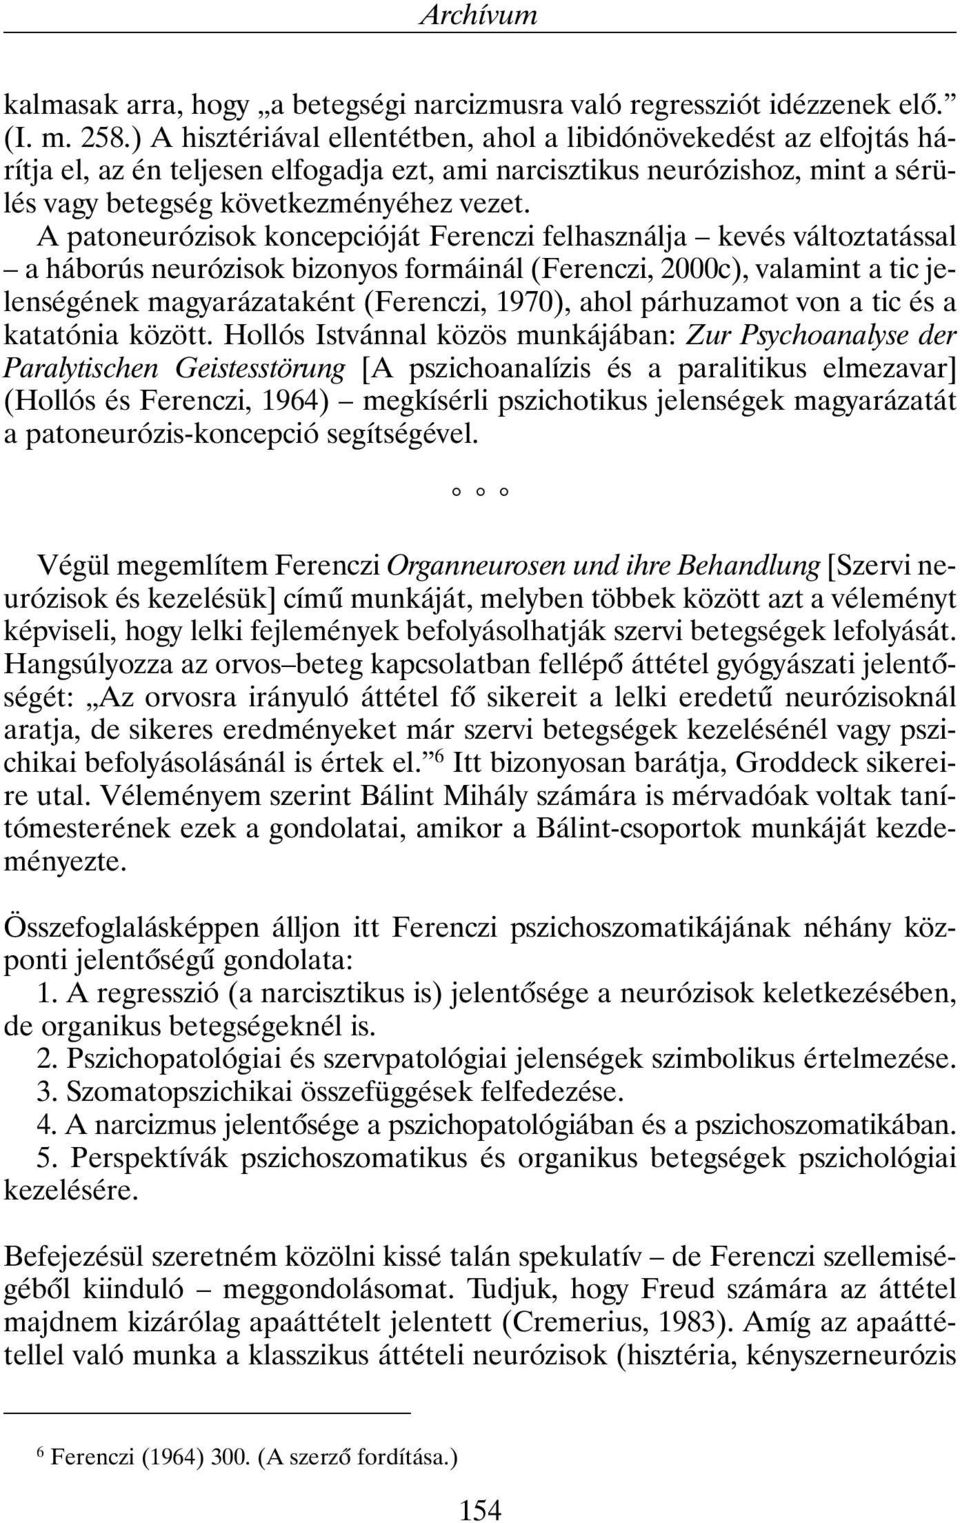 A patoneurózisok koncepcióját Ferenczi felhasználja kevés változtatással a háborús neurózisok bizonyos formáinál (Ferenczi, 2000c), valamint a tic jelenségének magyarázataként (Ferenczi, 1970), ahol